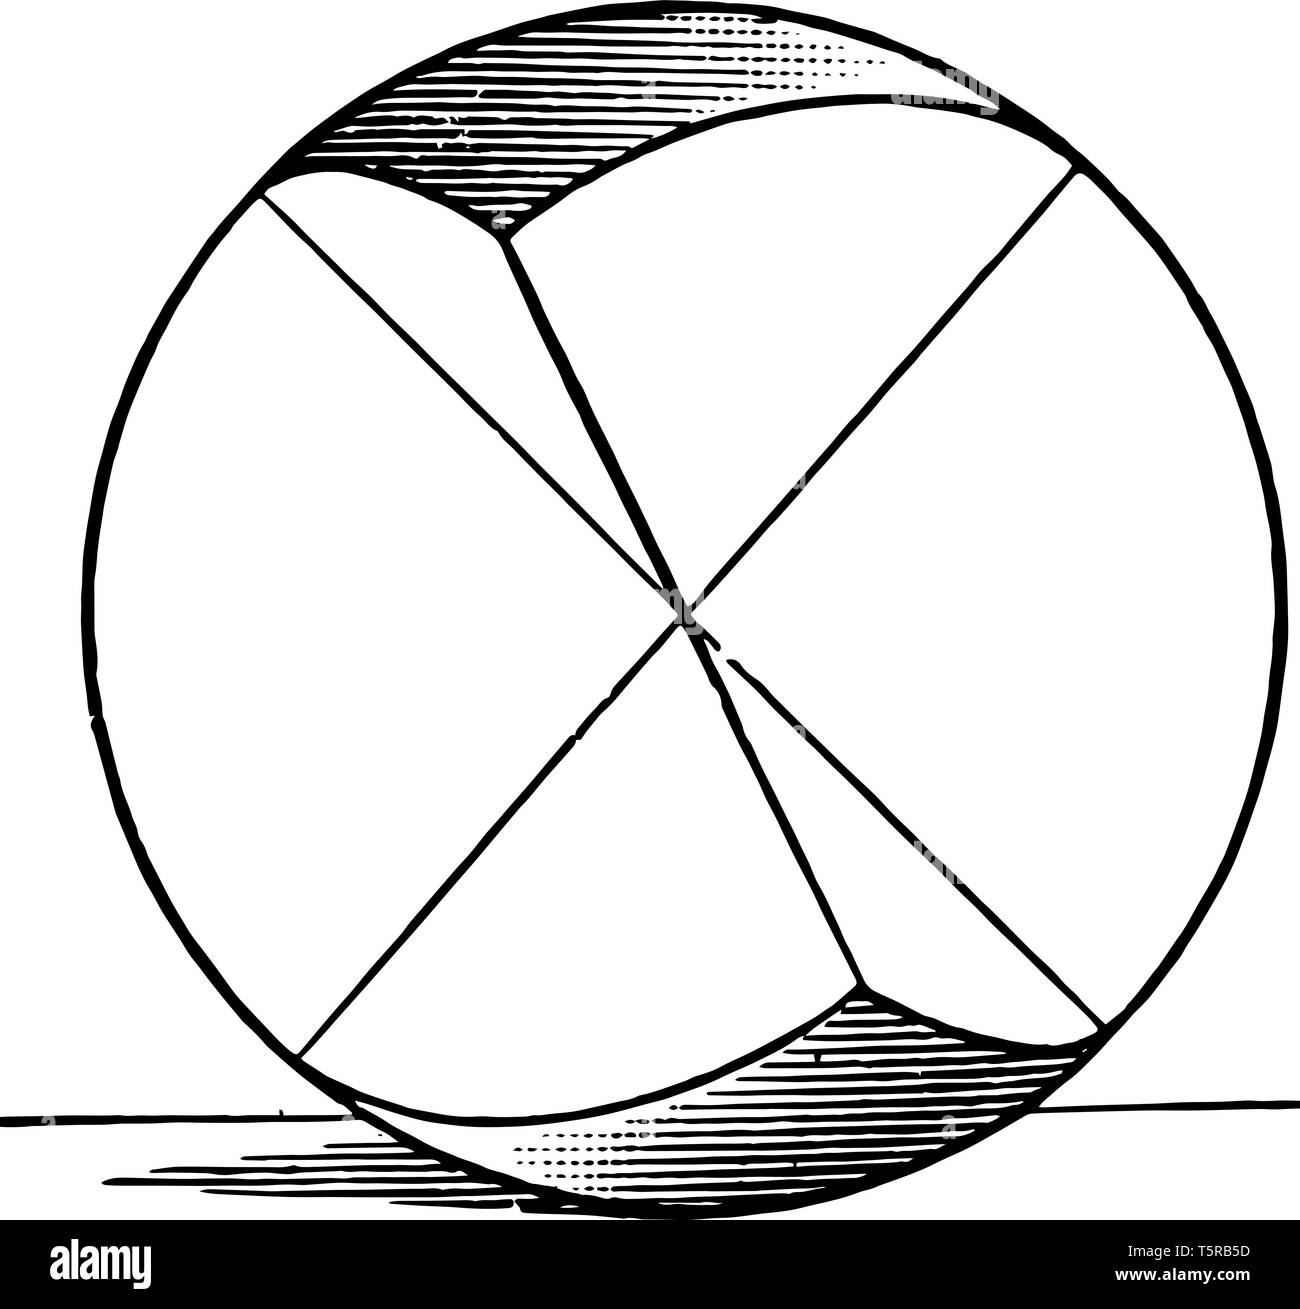 L'illustration montrant le triangles sphériques symétriques d'une sphère, construit par l'intersection des arcs polaires, vintage ou dessin de ligne fra Illustration de Vecteur